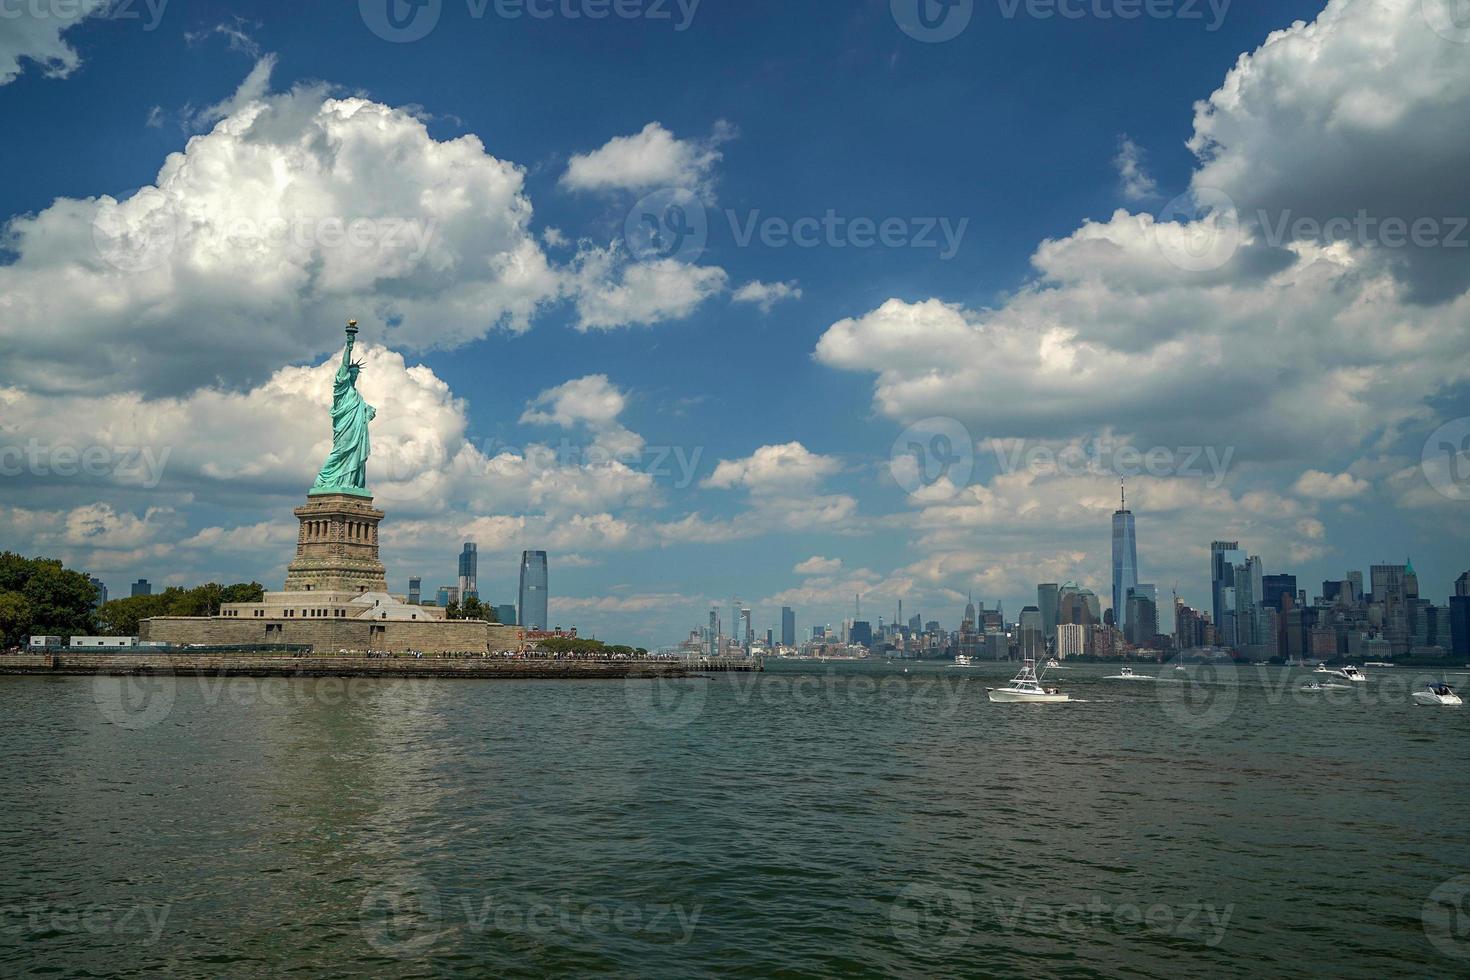 staty av frihet ny york stad USA foto